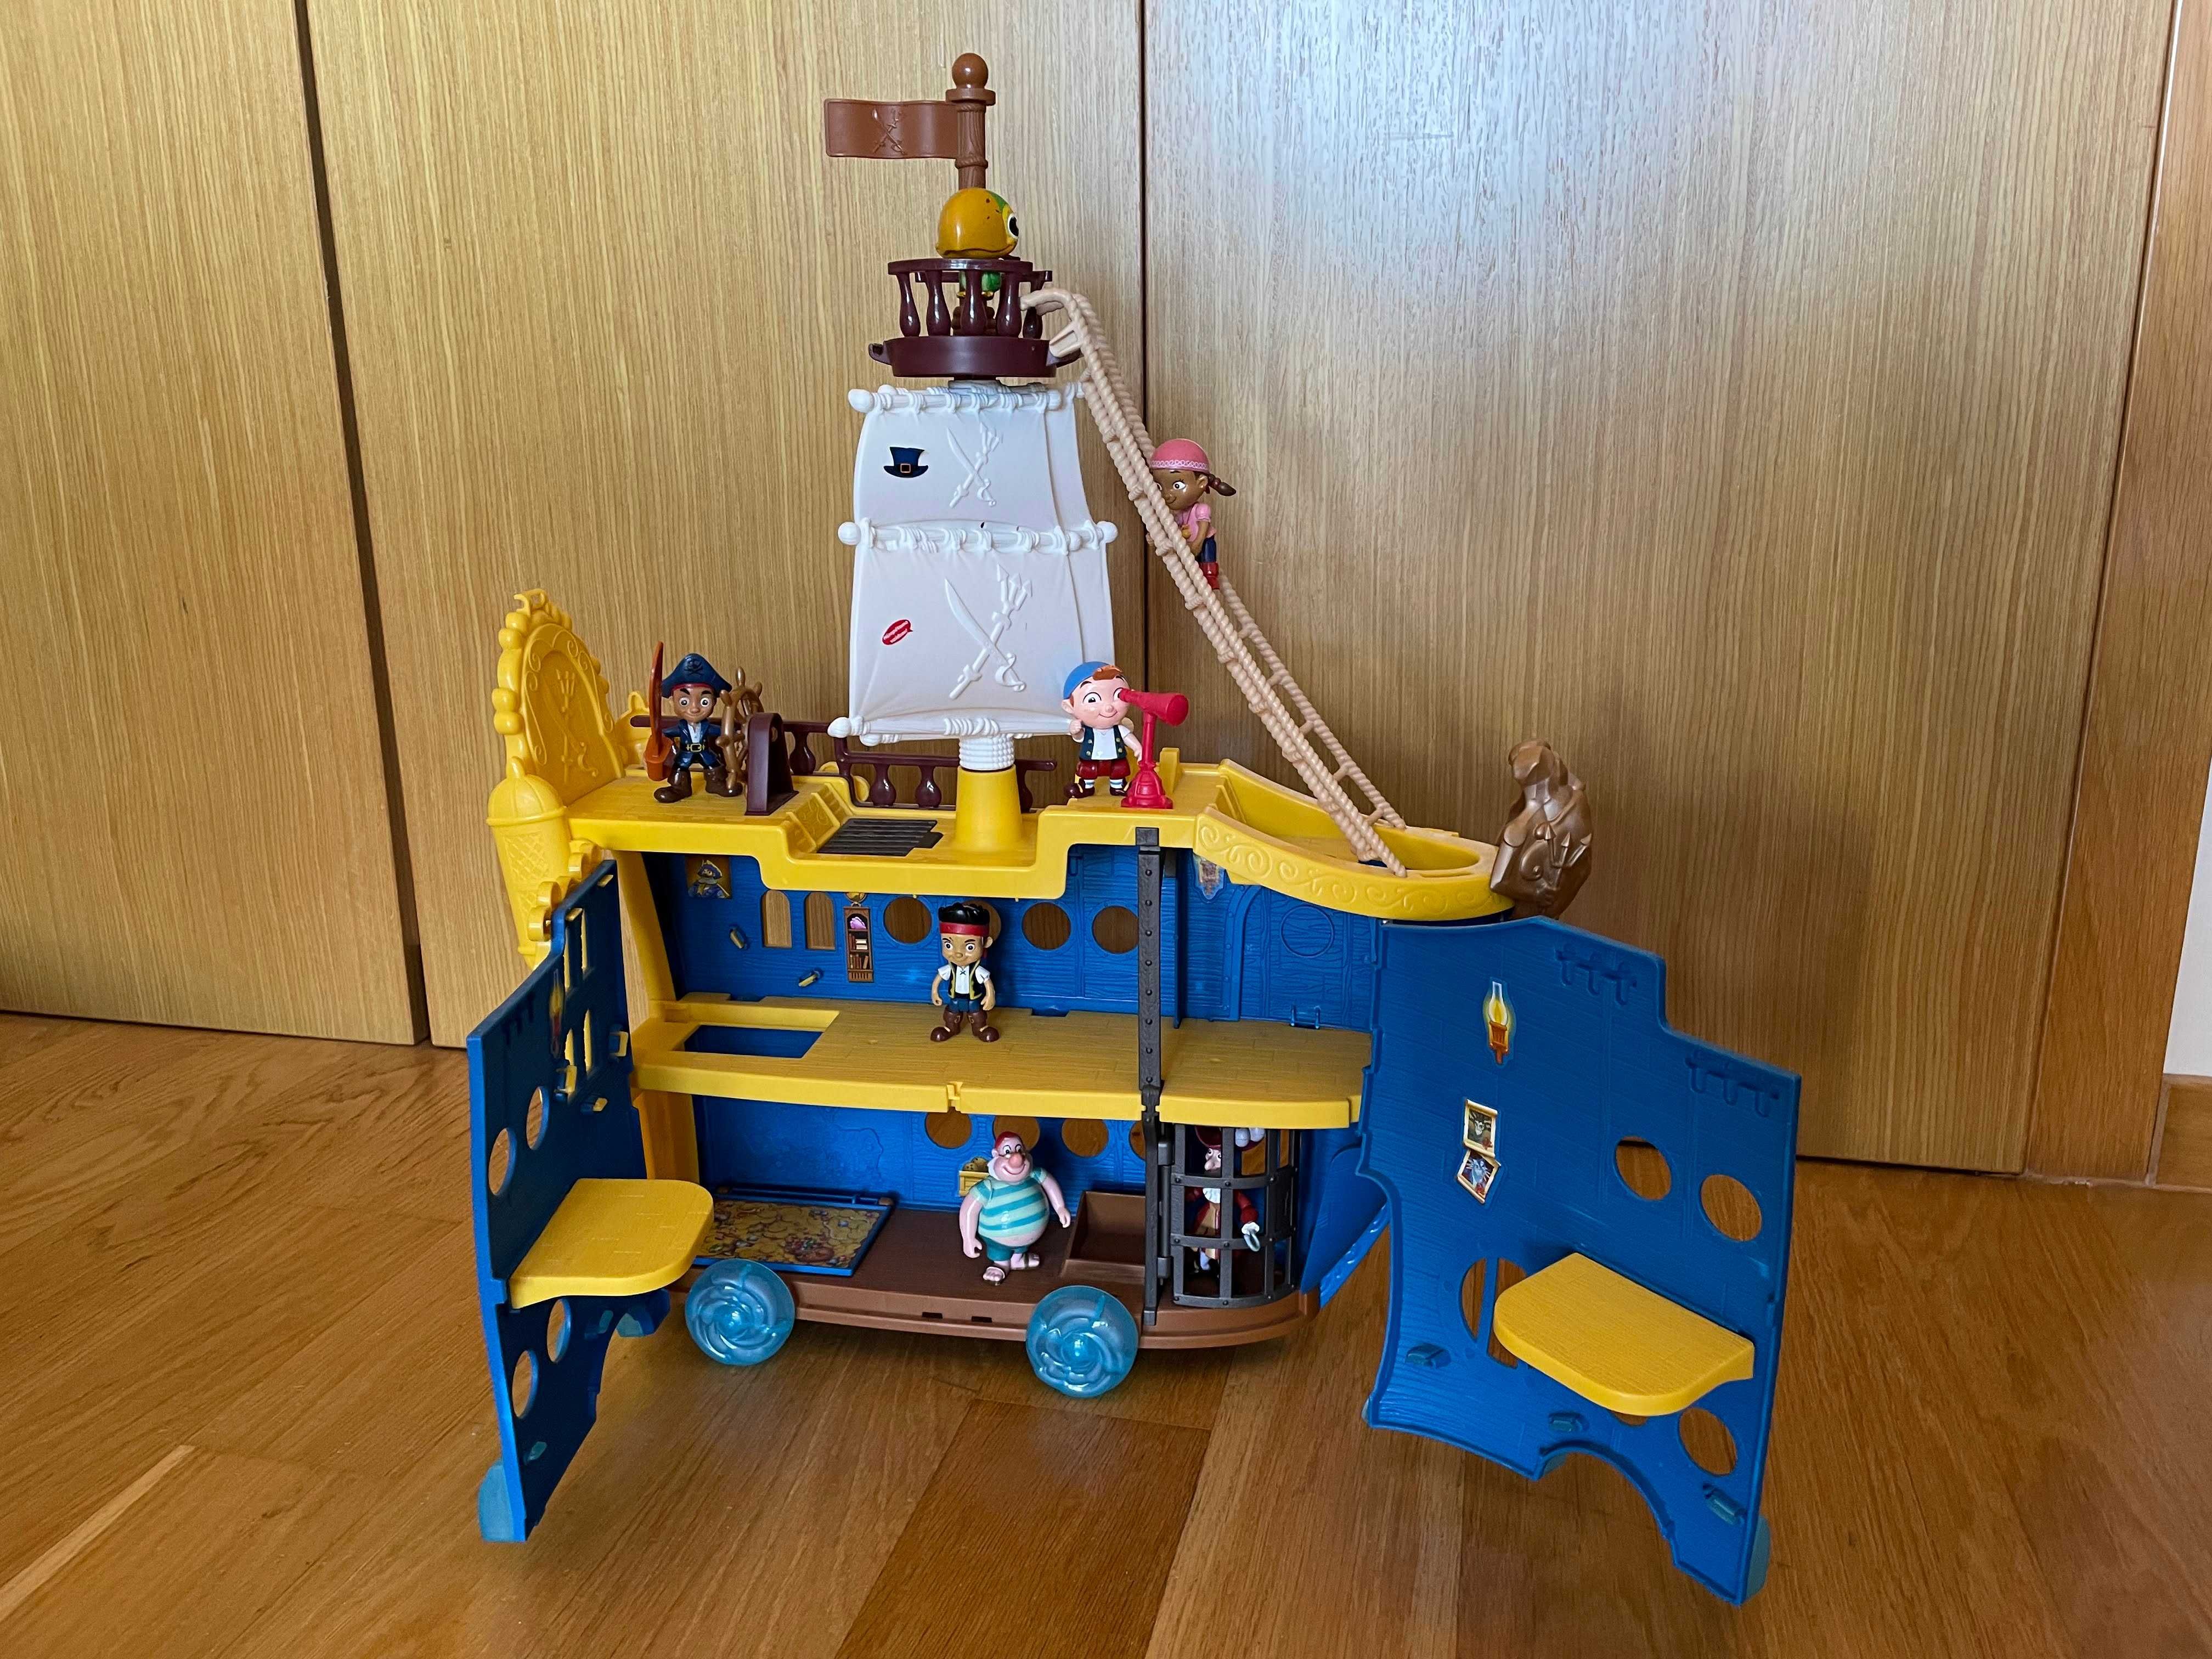 Jake e os Piratas - Barco Colosso dos Mares + Figuras